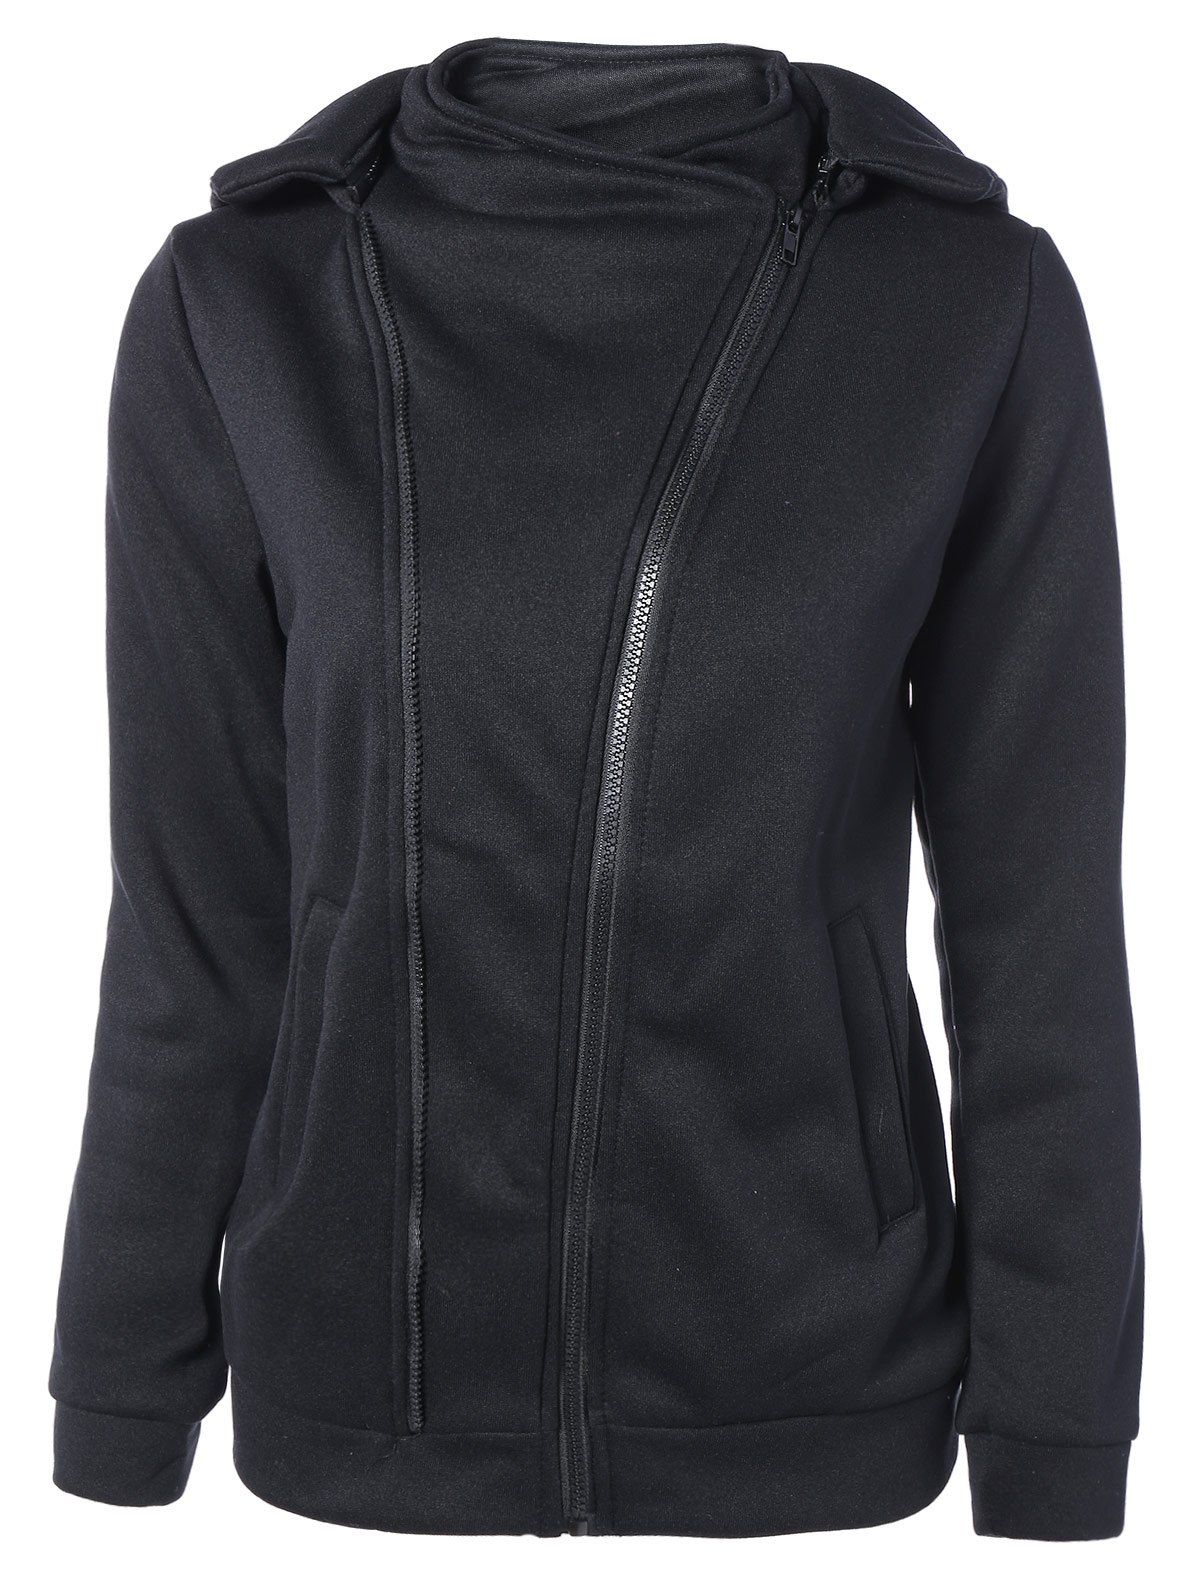 Asymmetric Zip Hoodie, BLACK, M in Sweatshirts & Hoodies | DressLily.com